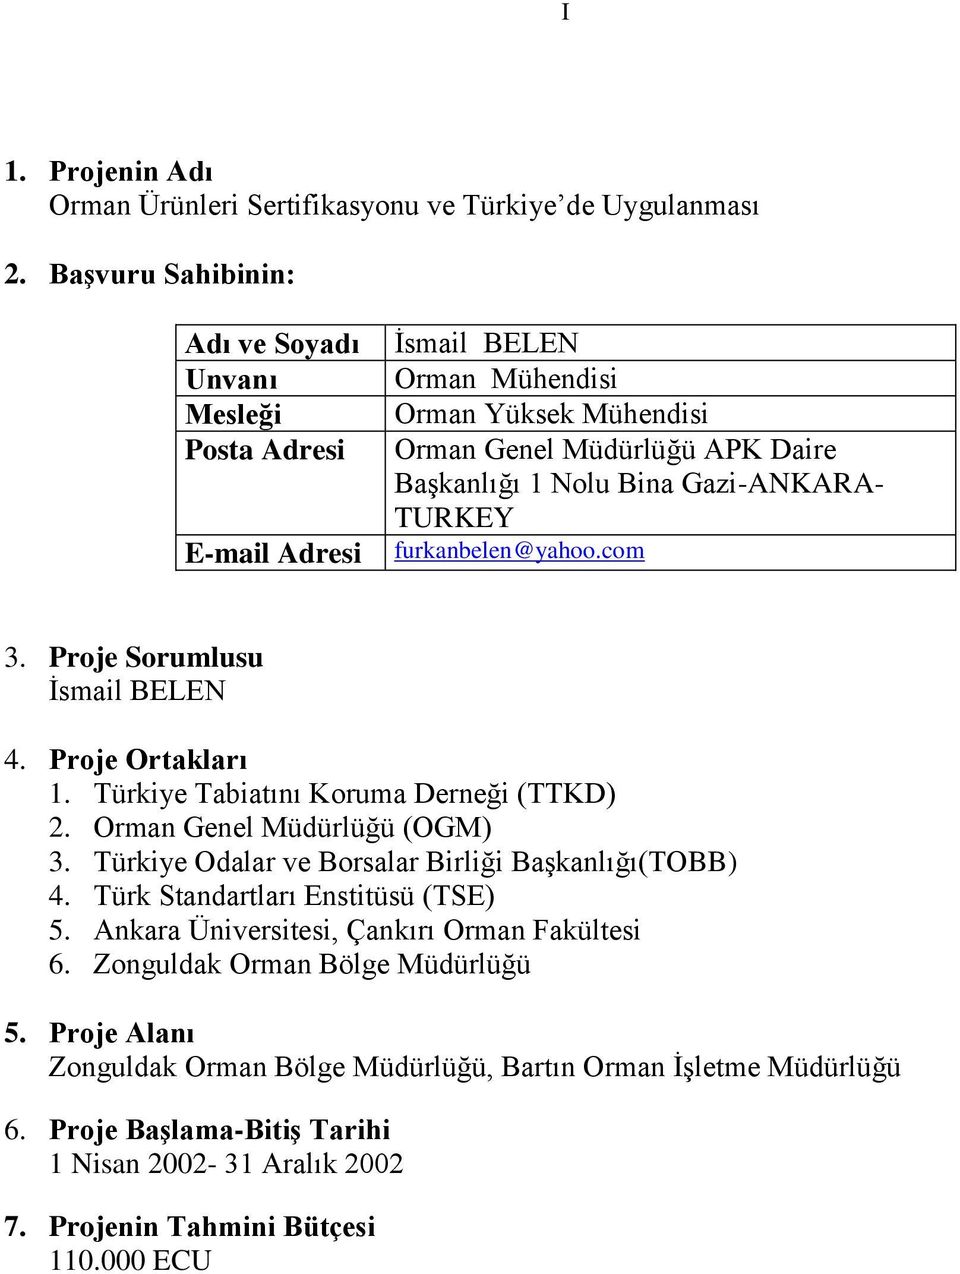 TURKEY furkanbelen@yahoo.com 3. Proje Sorumlusu Ġsmail BELEN 4. Proje Ortakları 1. Türkiye Tabiatını Koruma Derneği (TTKD) 2. Orman Genel Müdürlüğü (OGM) 3.